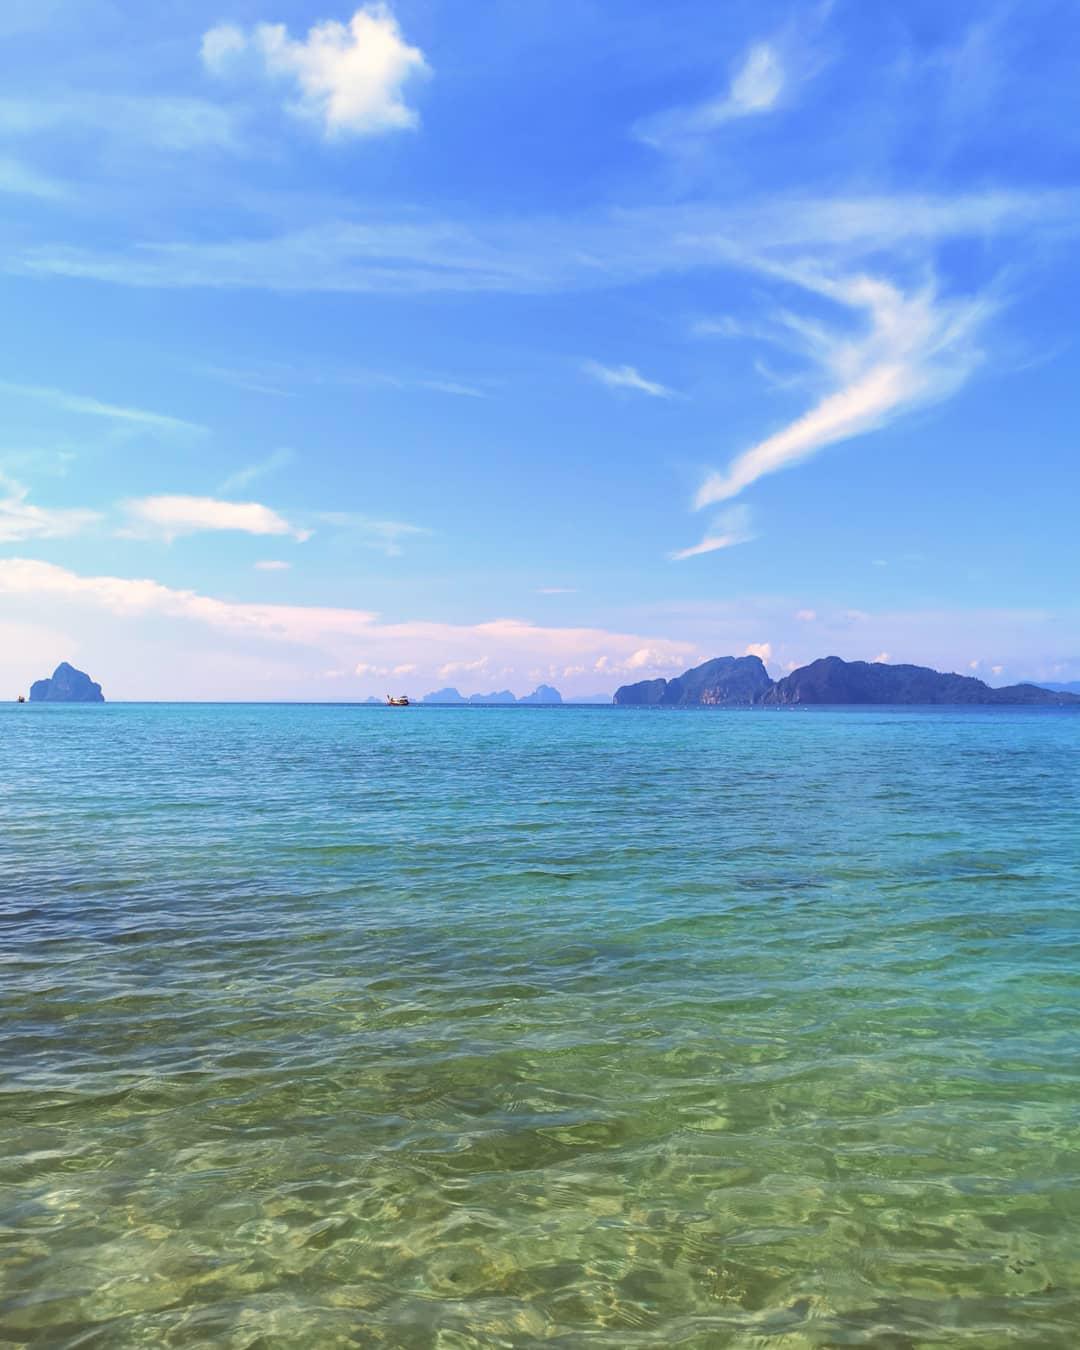 可可卡丹Koh Kradan-泰国绝美日落打卡圣地  泰国的海域好像都是这样的清澈，但是每片海域都有